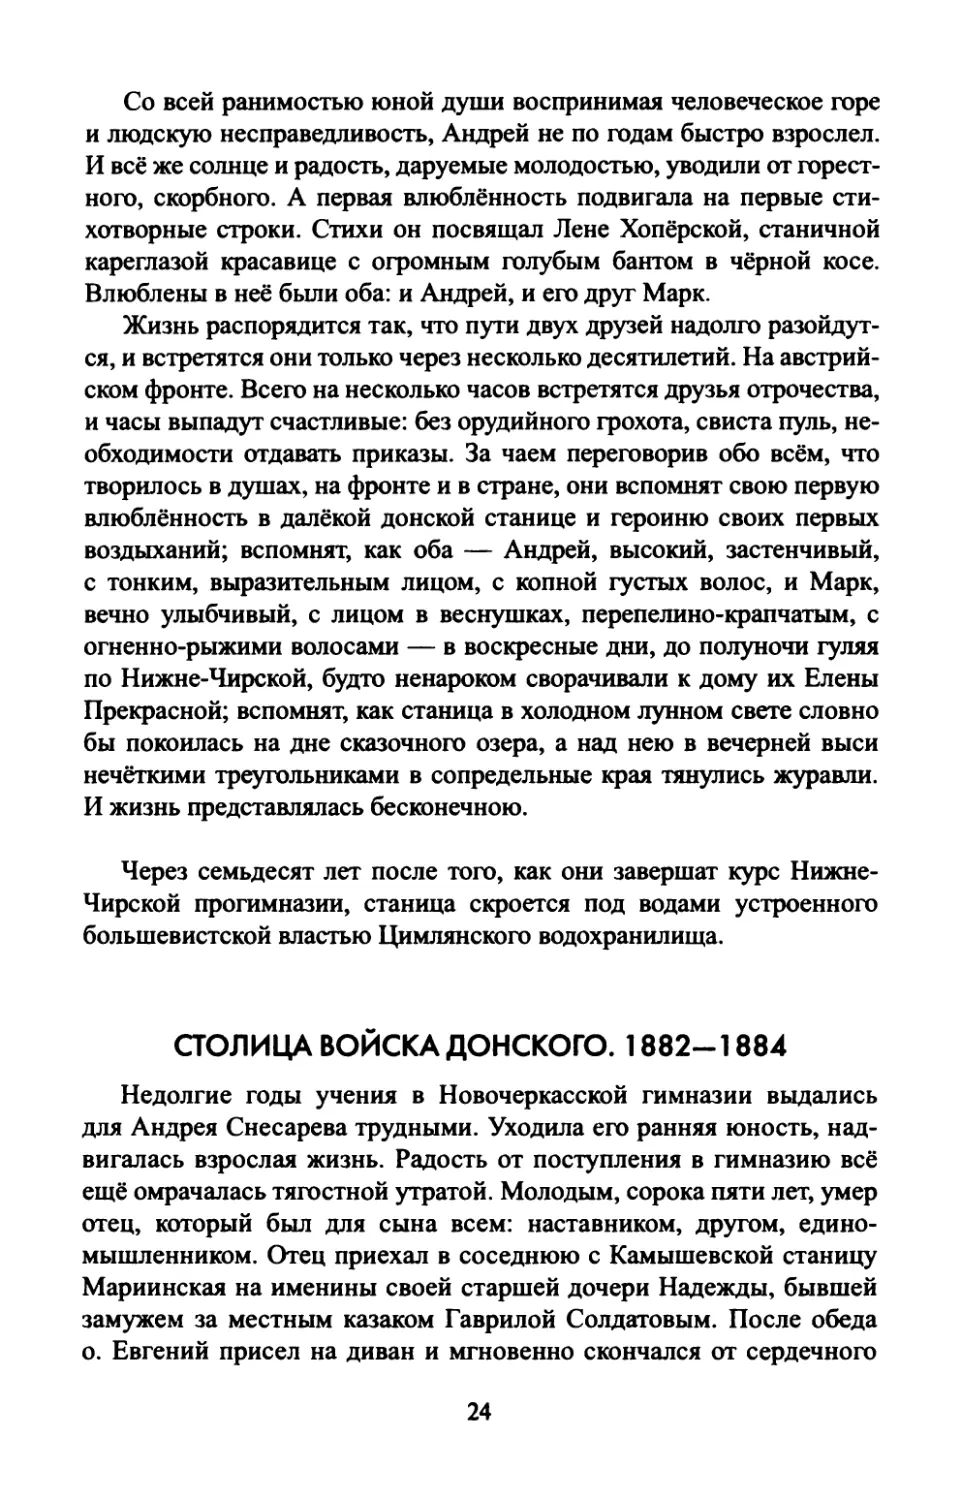 СТОЛИЦА  ВОЙСКА  ДОНСКОГО.  1882—1884